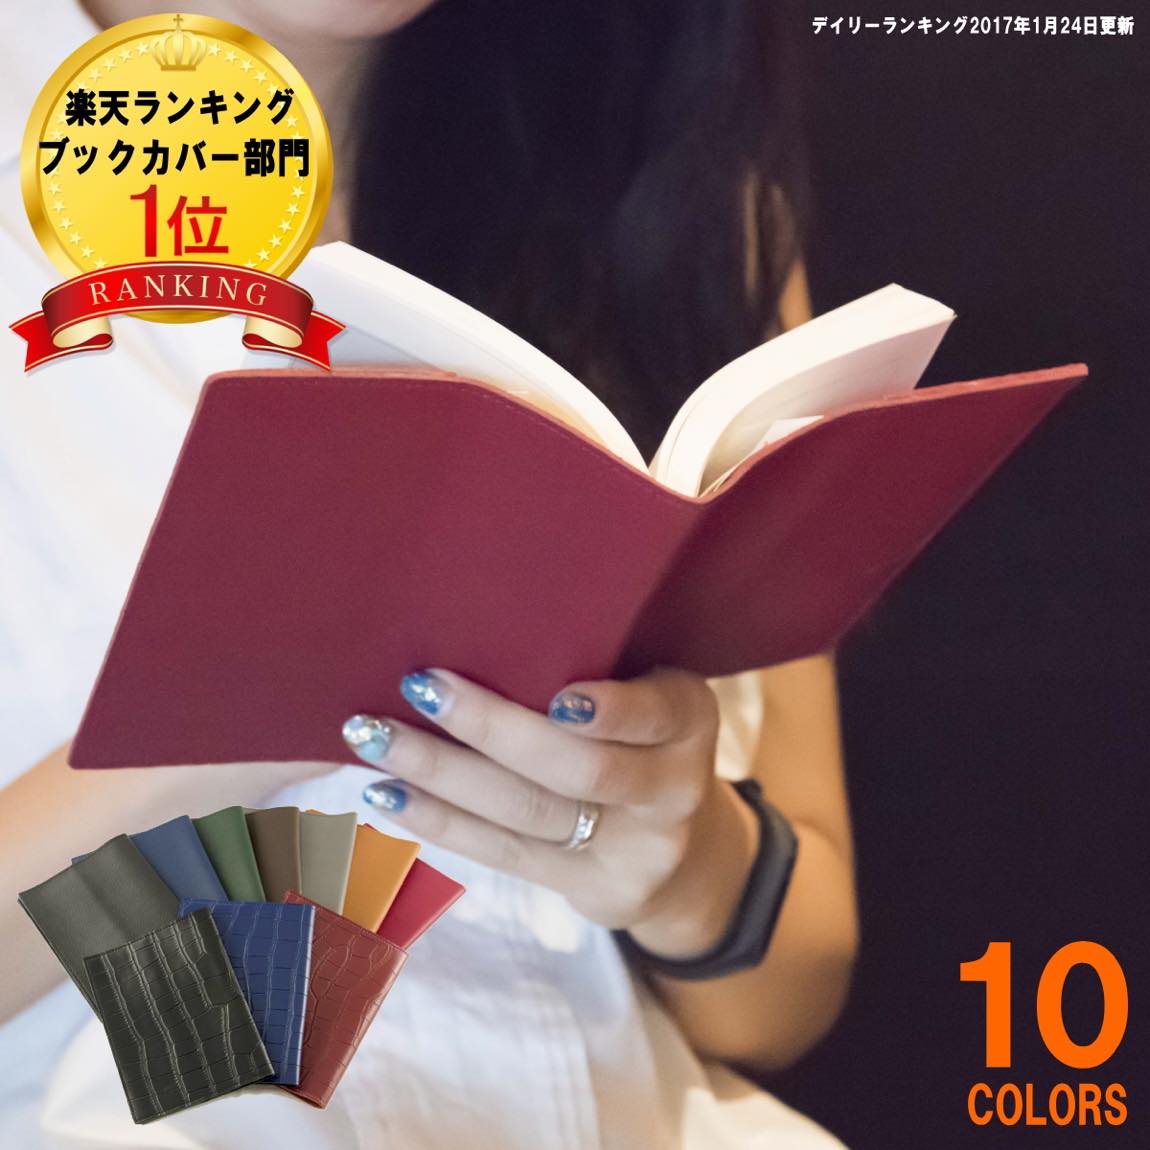 レガーレ ブックカバー 本革 日本最大のブランド A6サイズ 文庫本用 コミック 16.5 最安値に挑戦 カラー豊富 新書 文庫